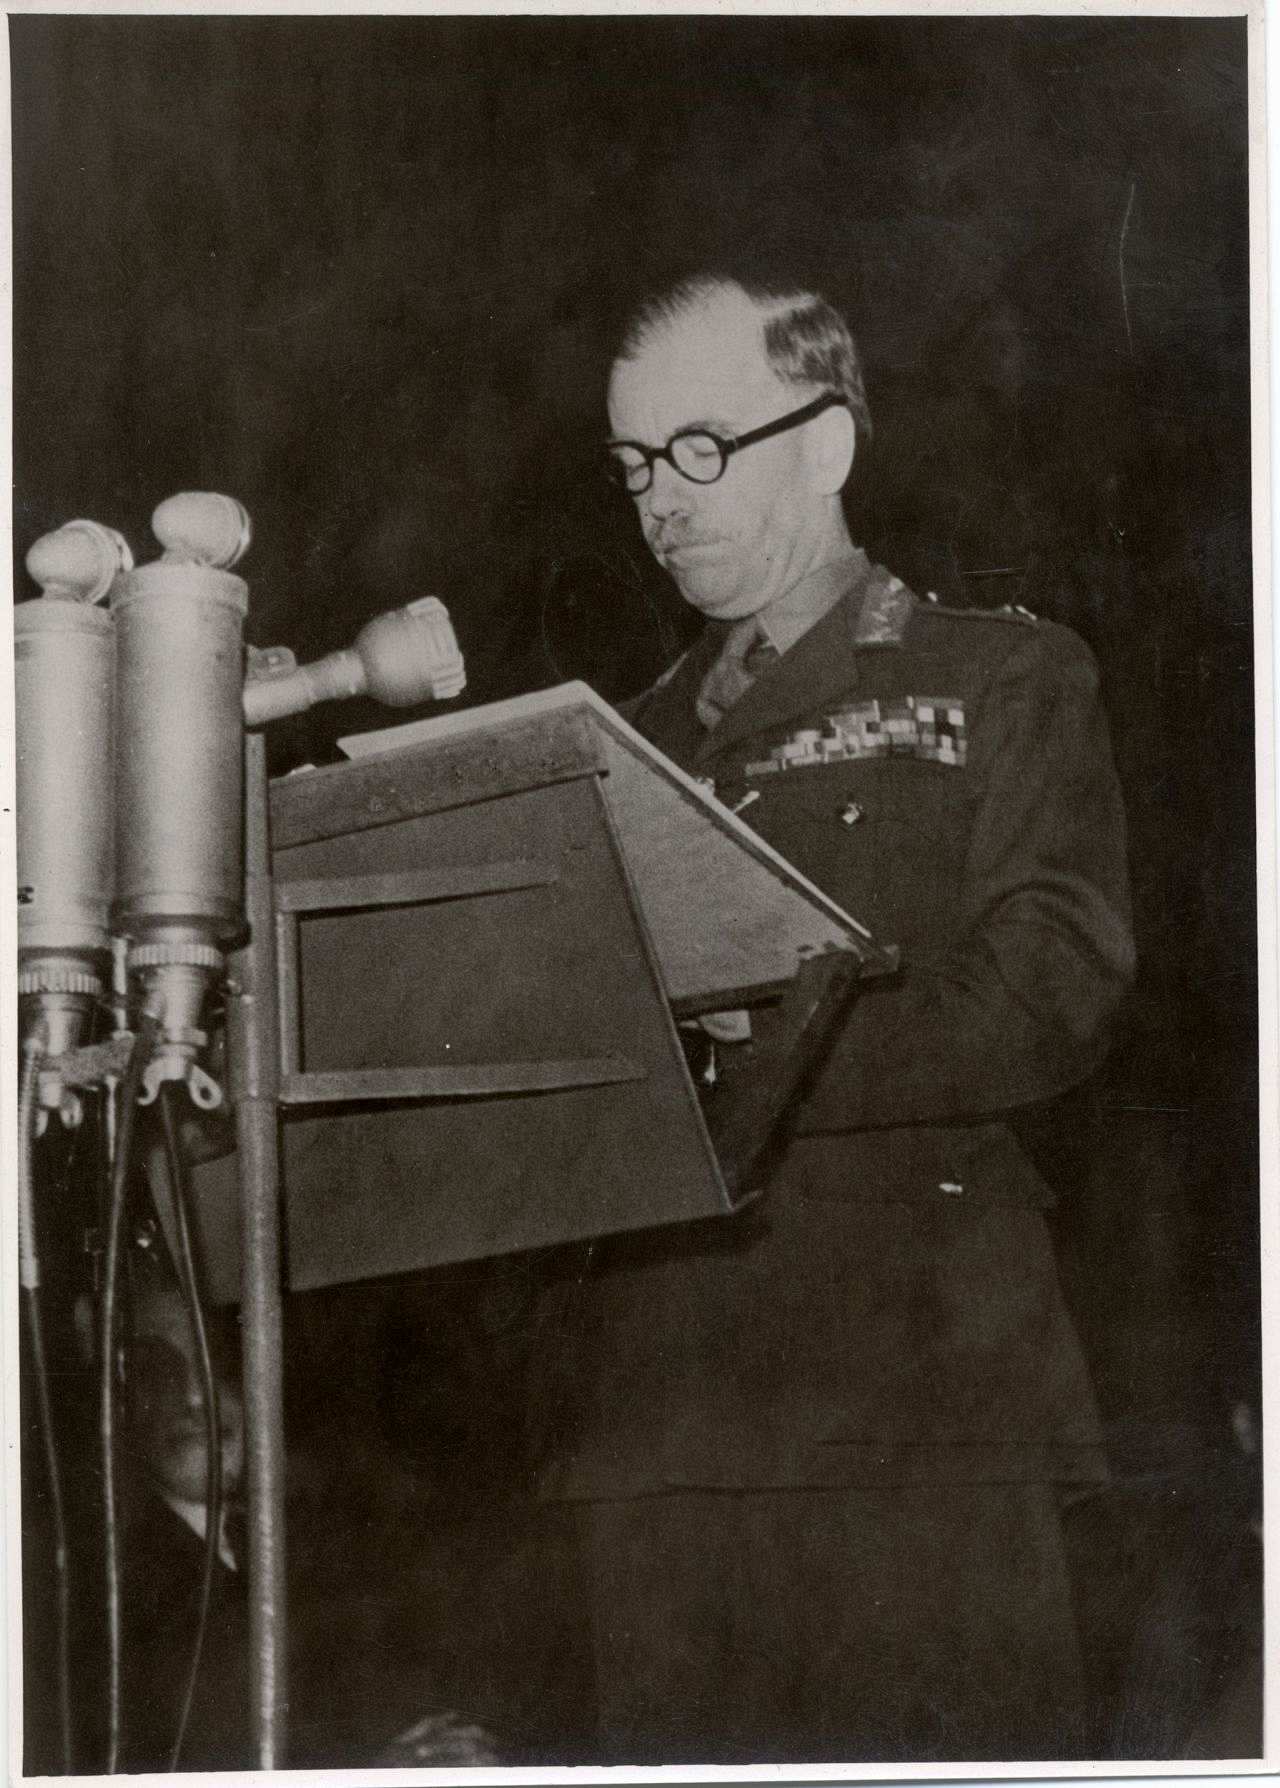 General Brian Robertson, Oberbefehlshaber der britischen Besatzungszone, während einer Rede vor dem Landtag von Nordrhein-Westfalen, April 1948